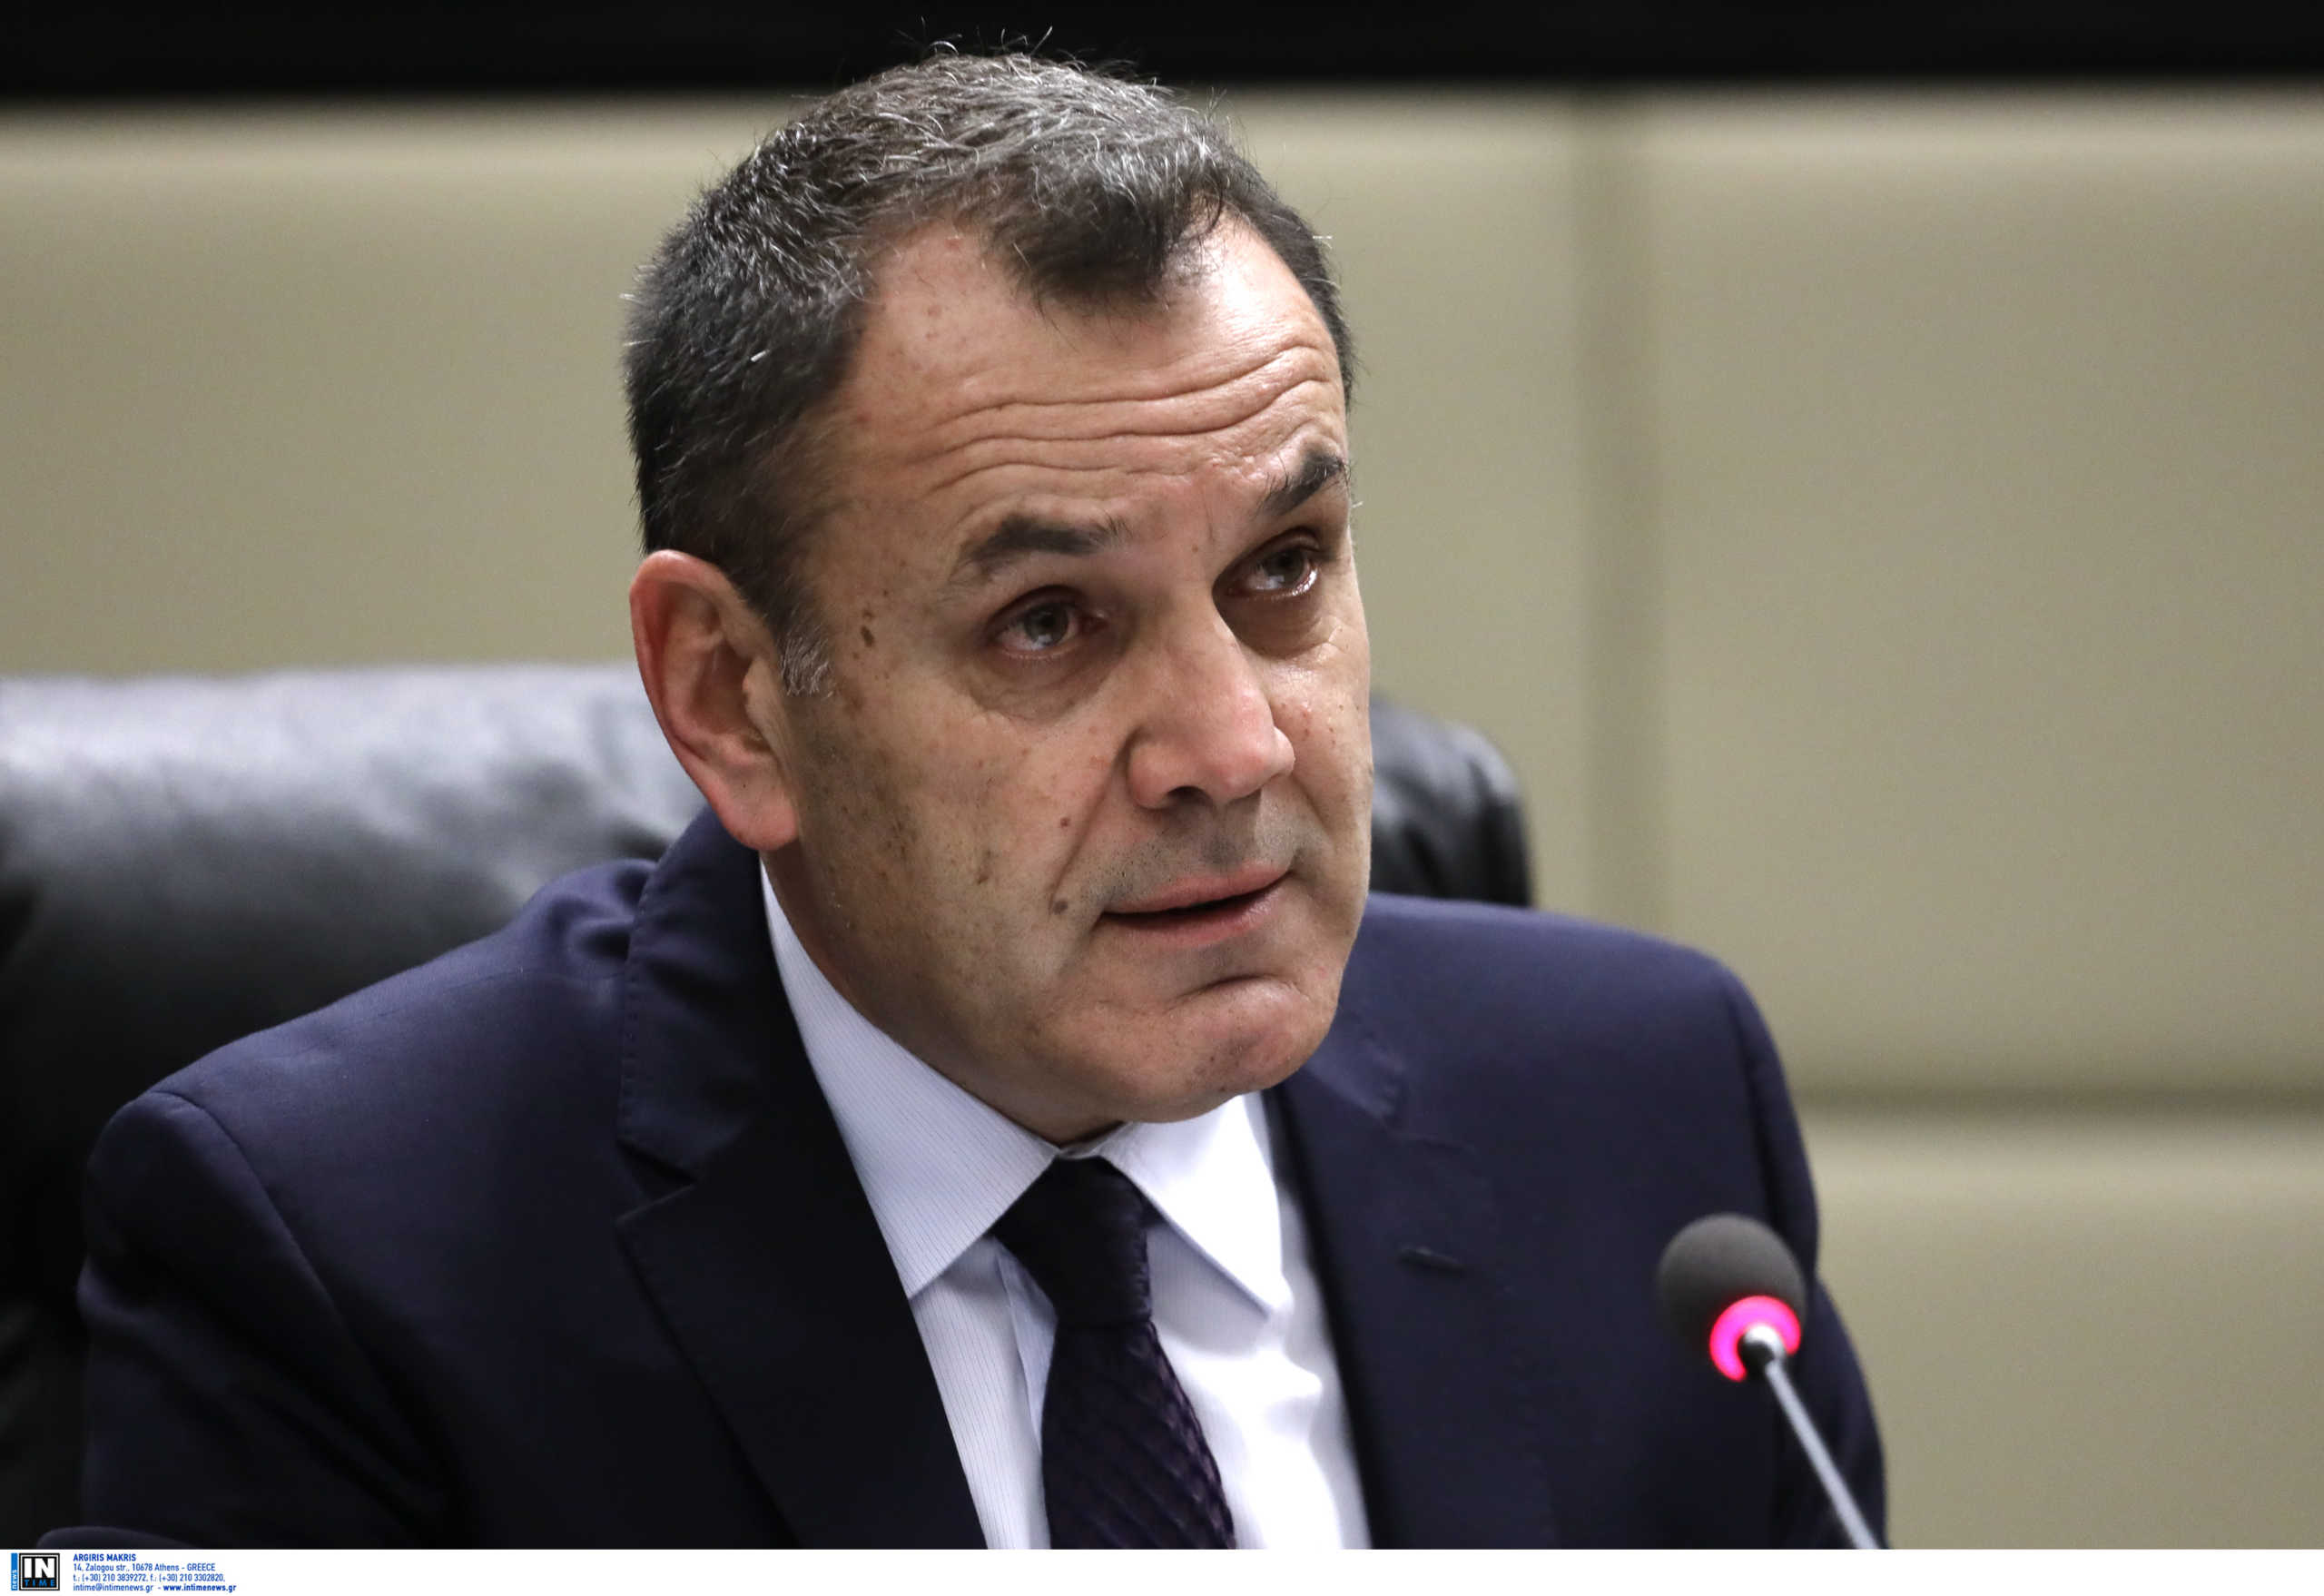 Παναγιωτόπουλος από το βήμα της Βουλής: Αναμένονται επενδύσεις στην Αμυντική Βιομηχανία